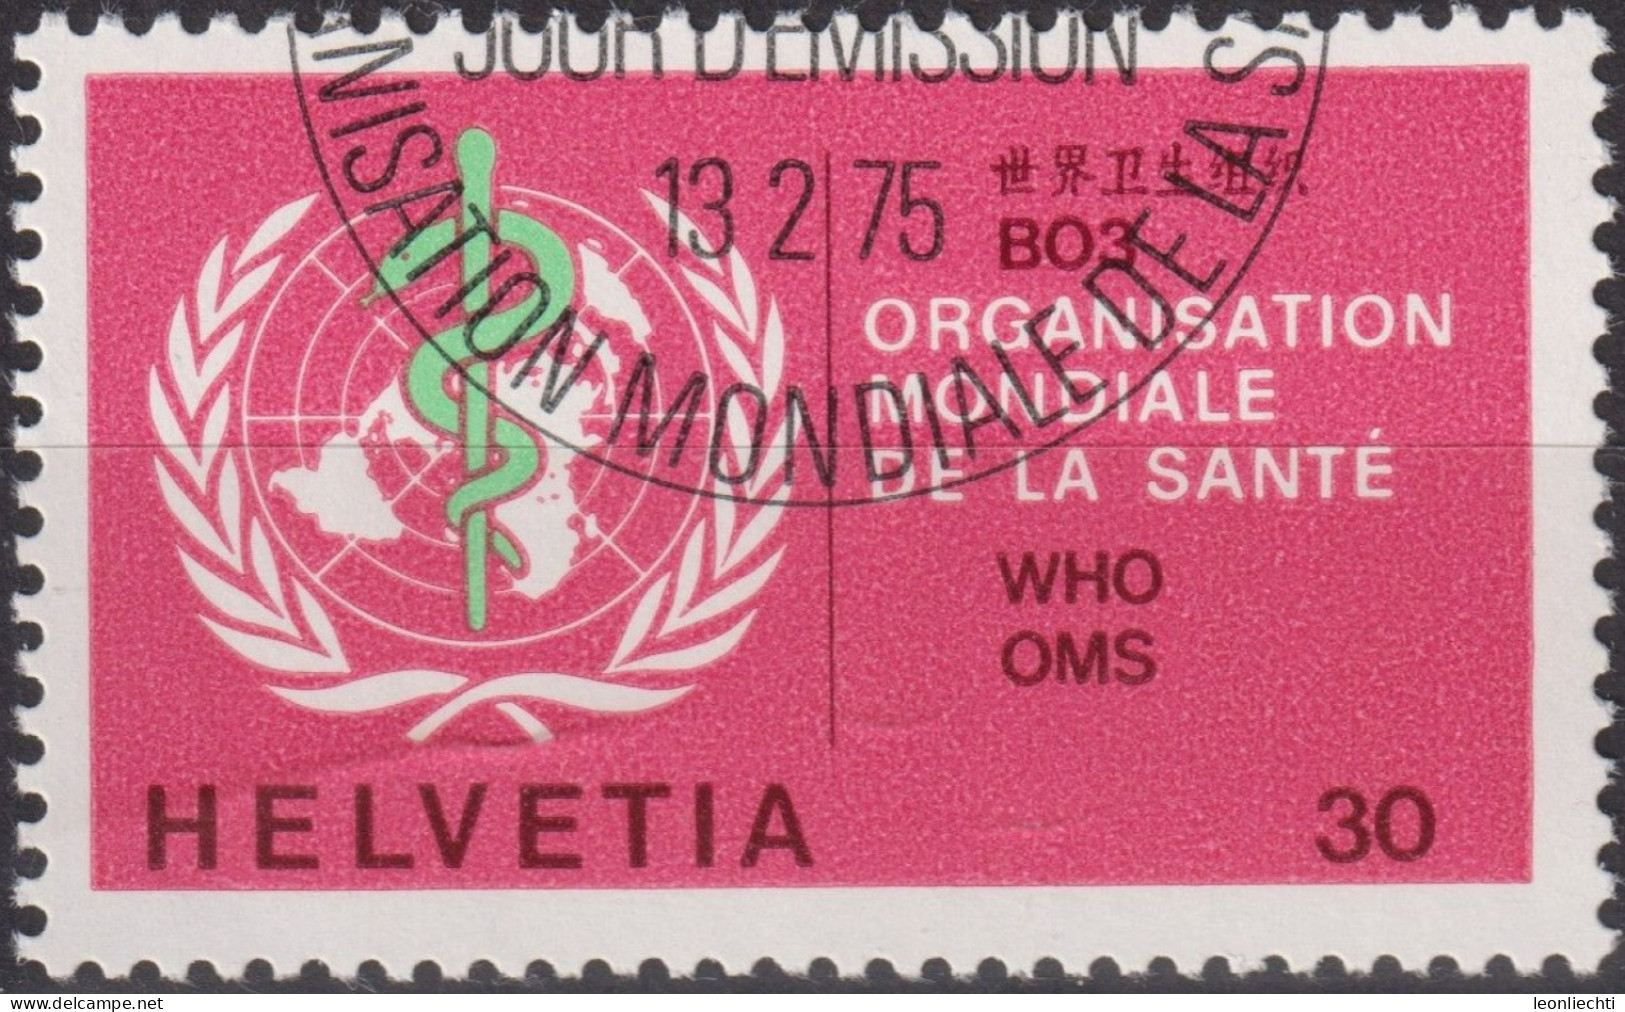 1975 Schweiz / Dienstmarke OMS ° Mi:CH-OMS 36, Yt:CH S446,Zum:CH-OMS 36, Emblem OMS - Service